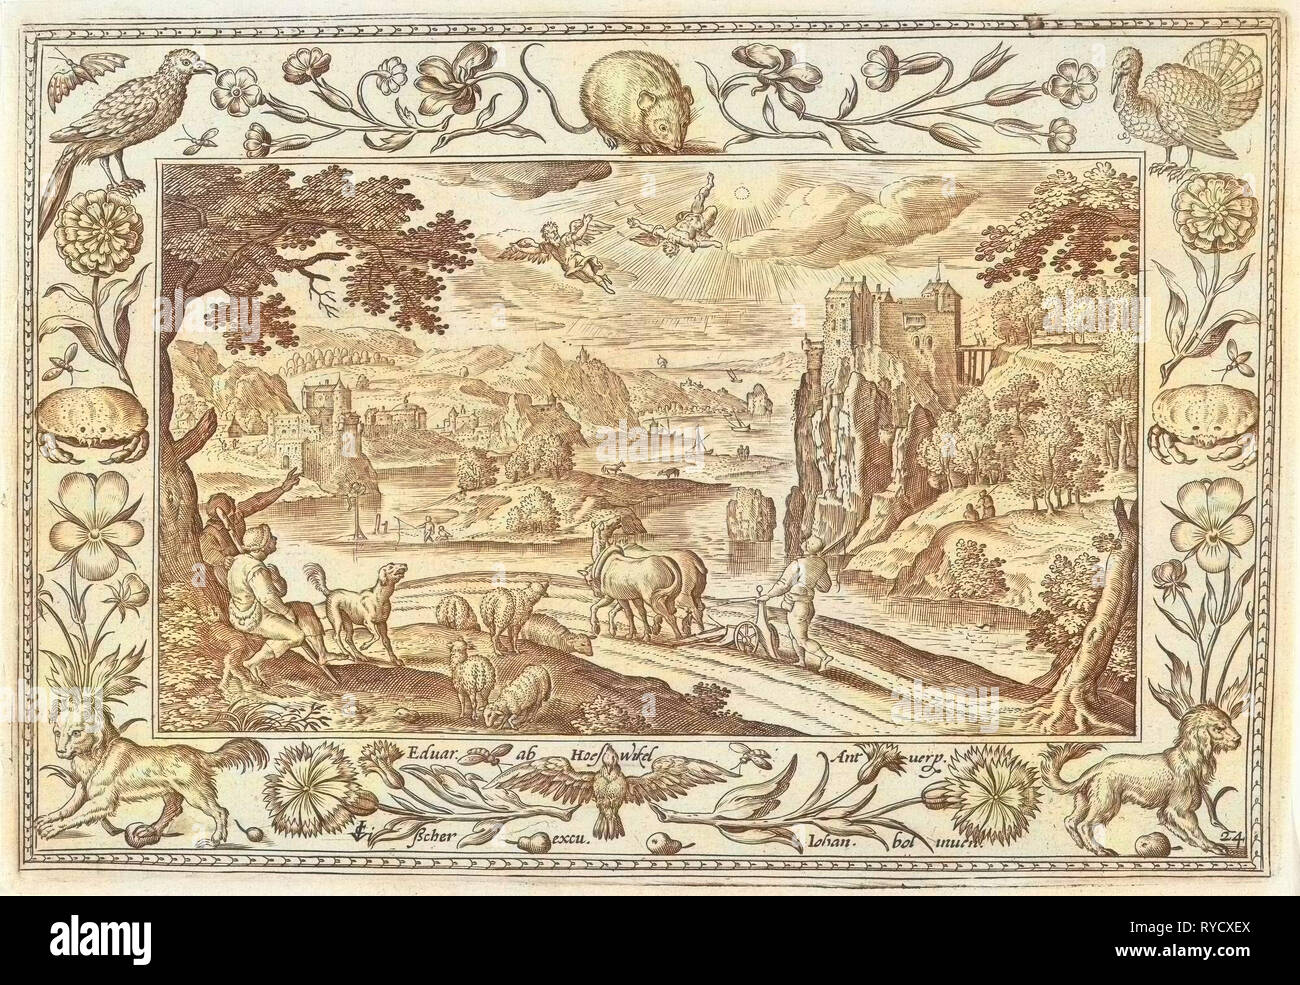 Fall of Icarus, Adriaen Collaert, Claes Jansz. Visscher (II), Eduwart van Hoeswinckel, 1584 - 1618 Stock Photo